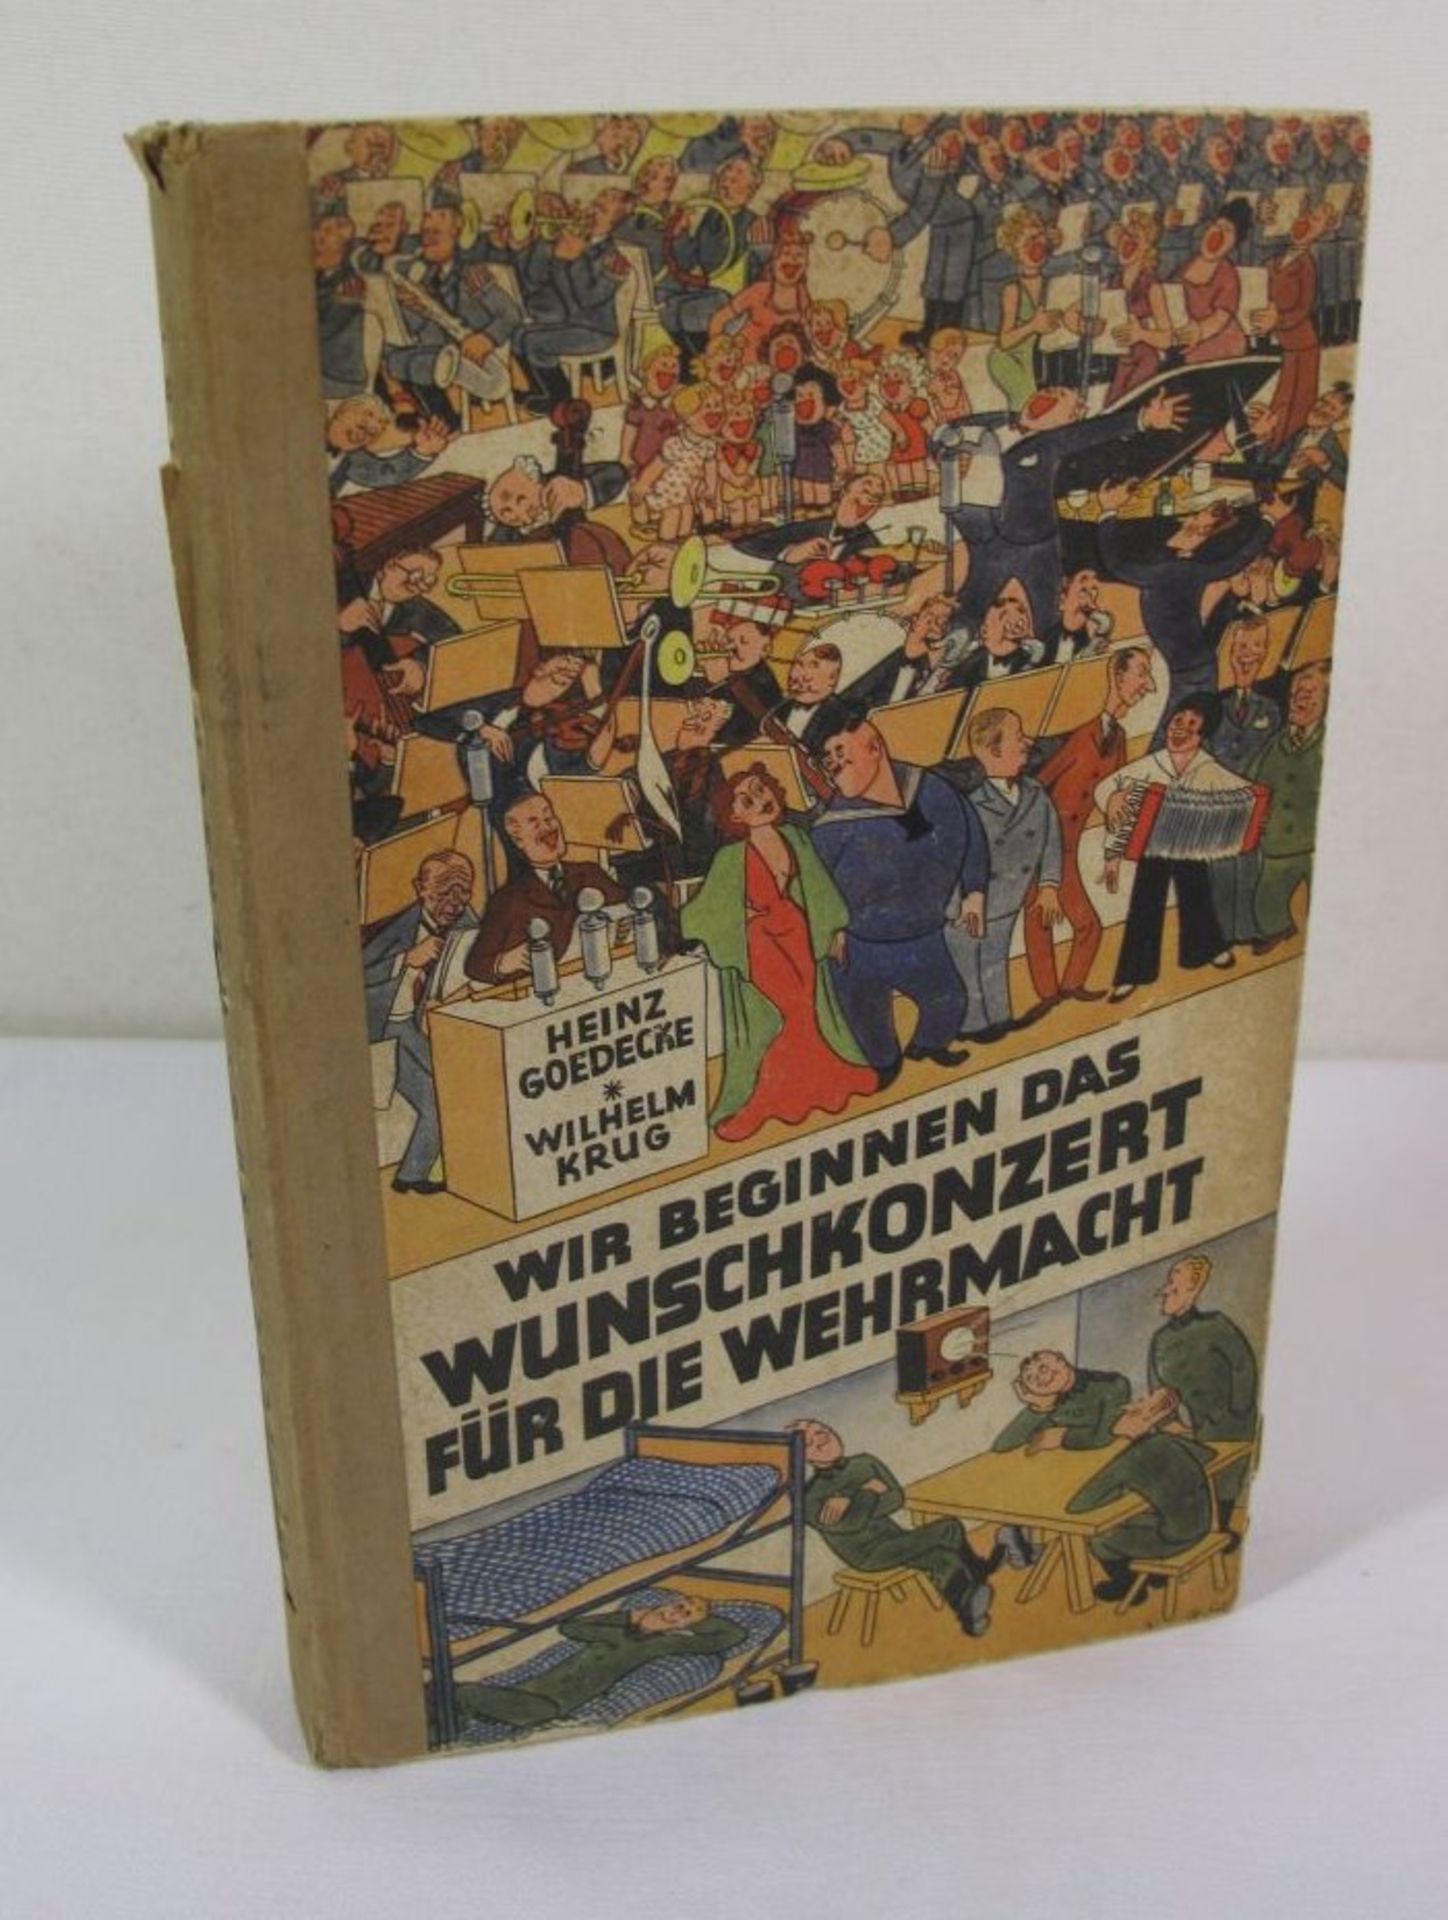 Wir beginnen das Wunschkonzert für die deutsche Wehrmacht, 1940.